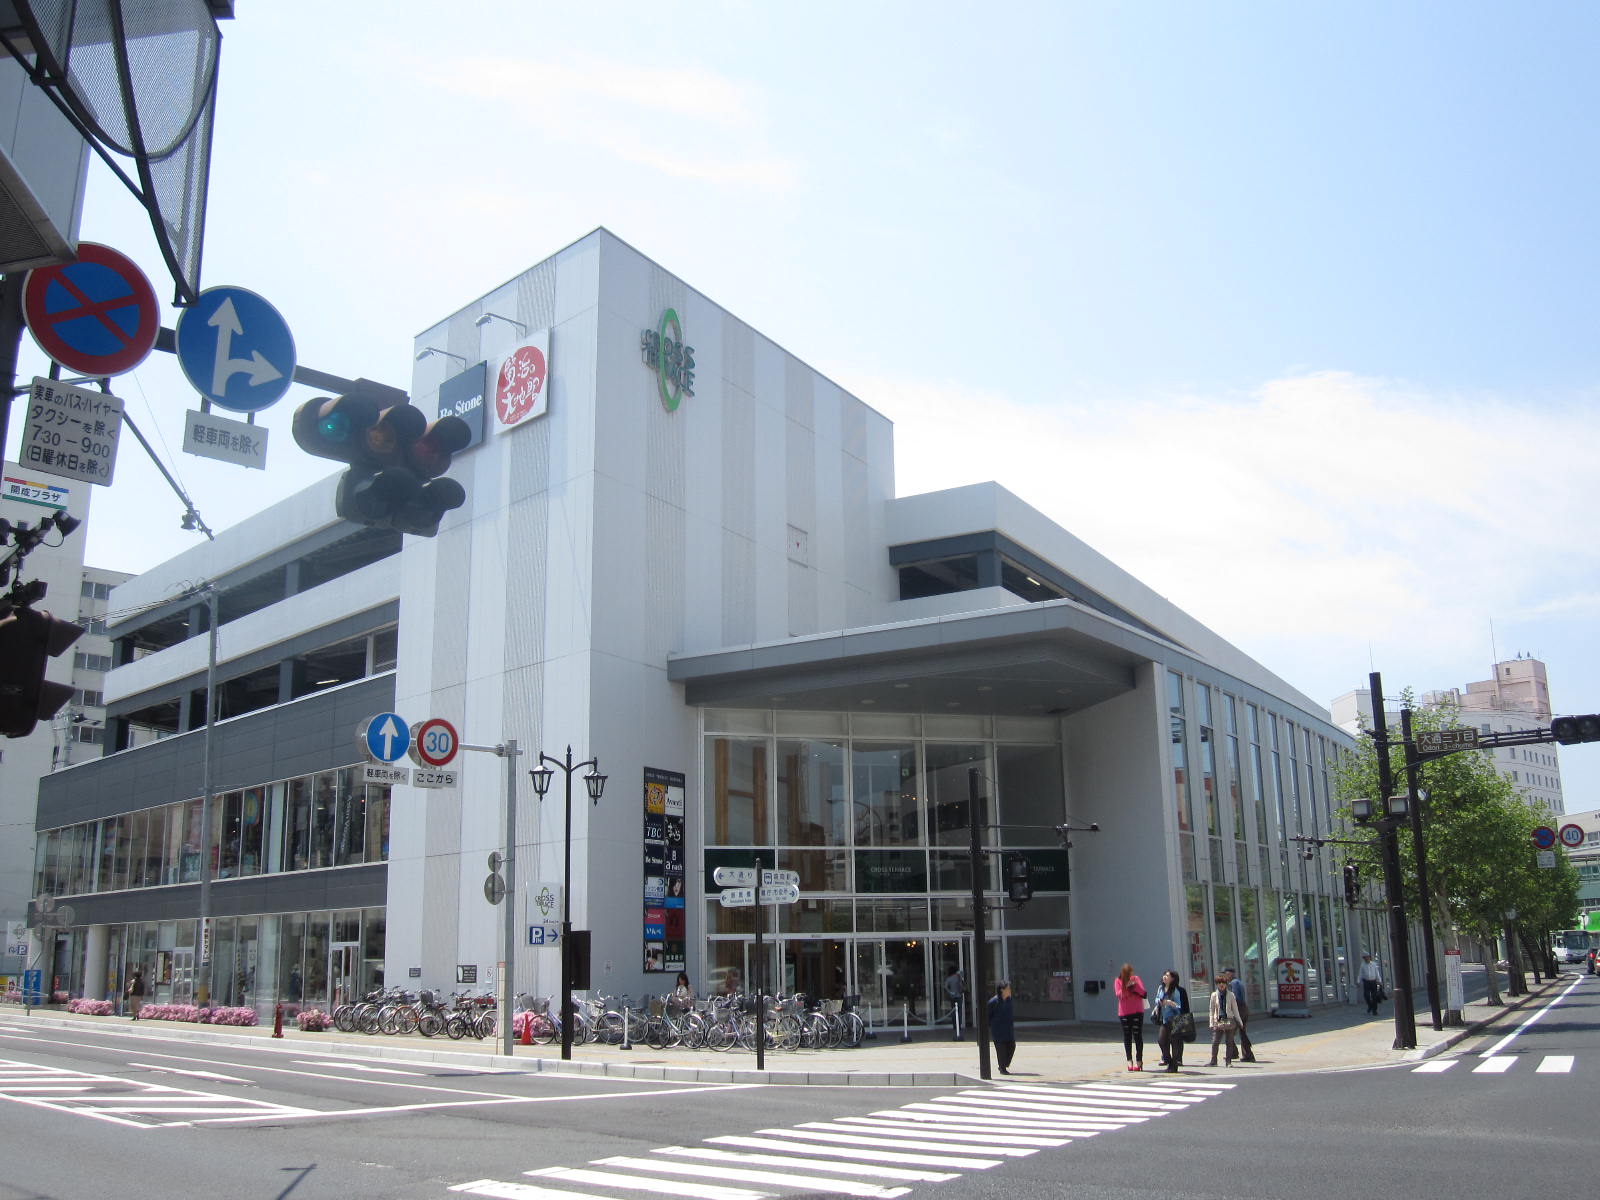 Shopping centre. 1100m to cross terrace Morioka (shopping center)